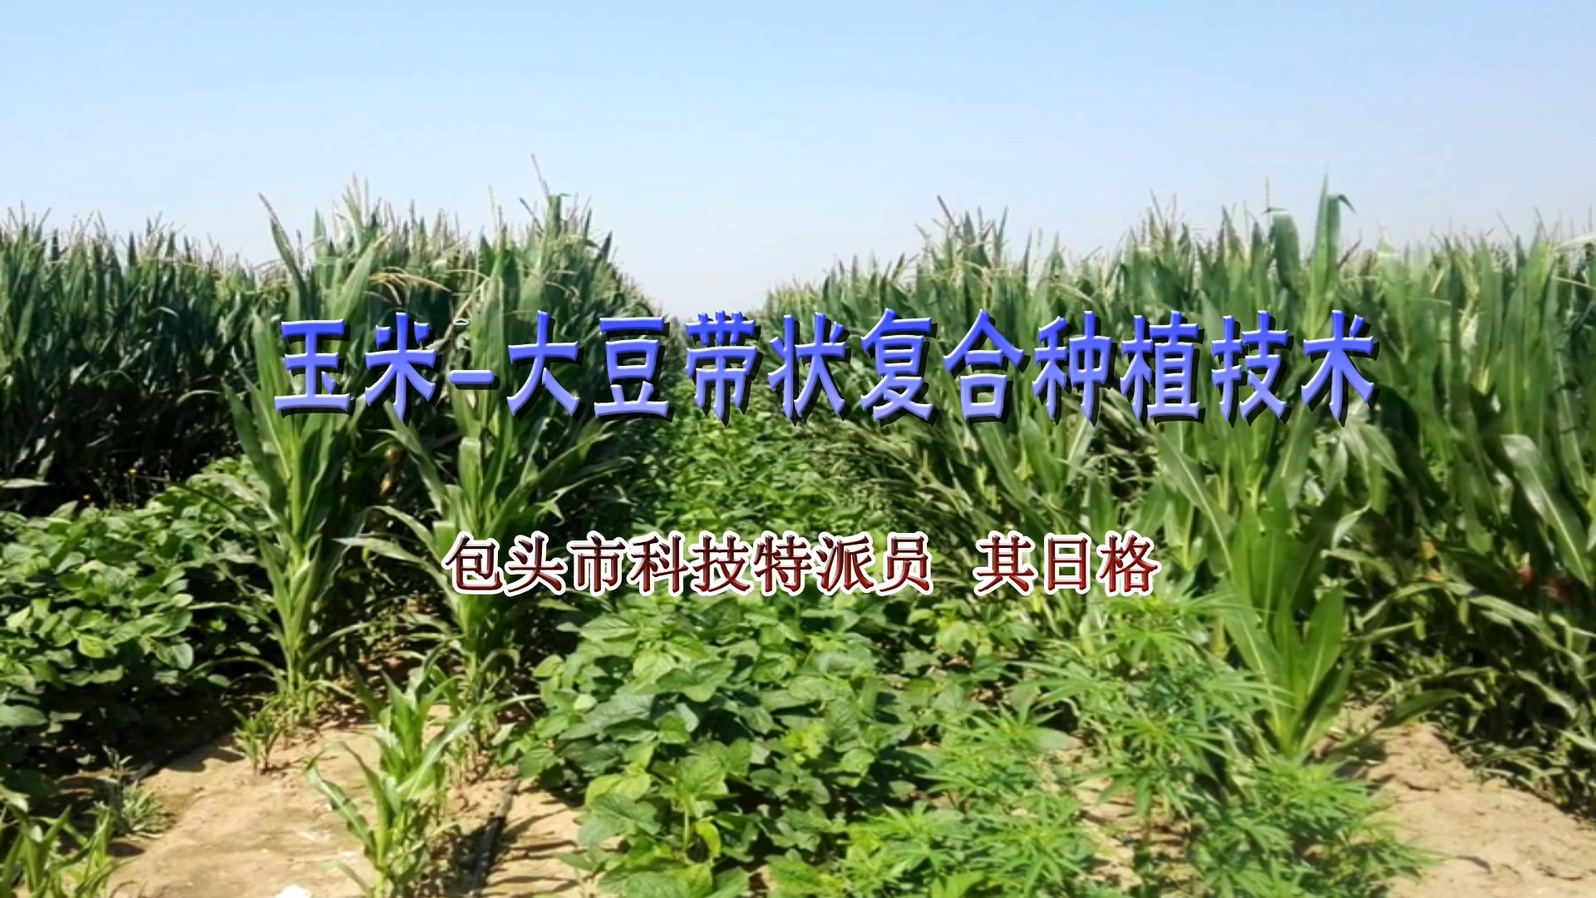 玉米-大豆带状复合种植技术 